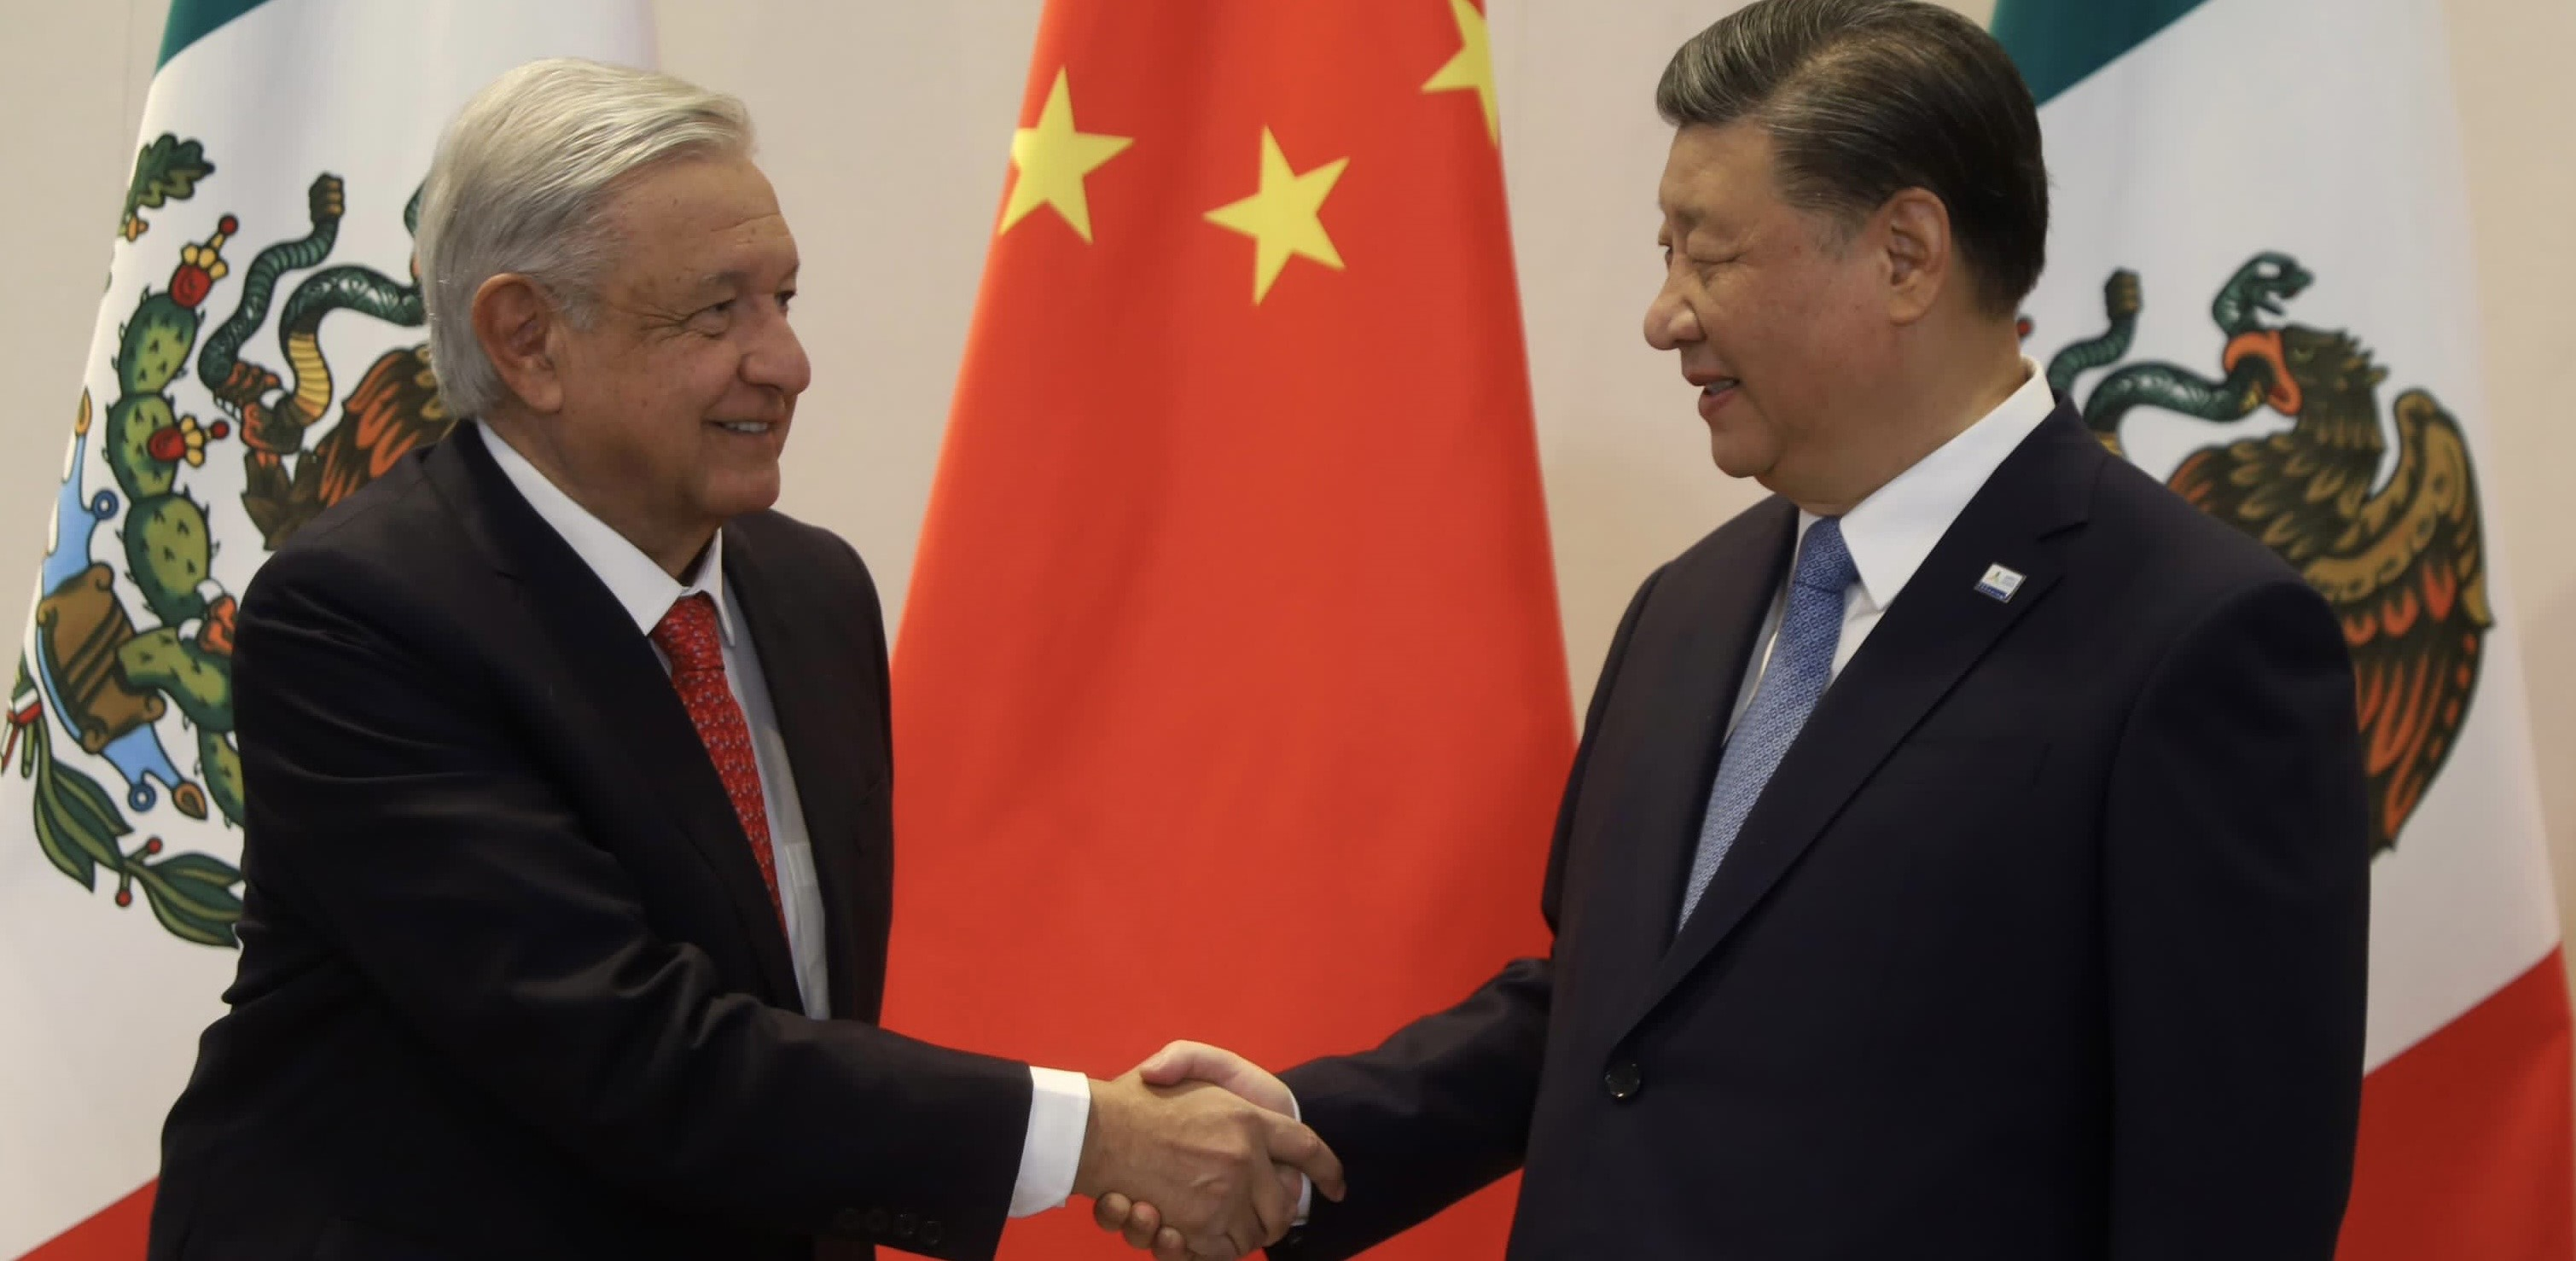 Fue interesante el encuentro entre Xi Jin Ping -López Obrador: Experto